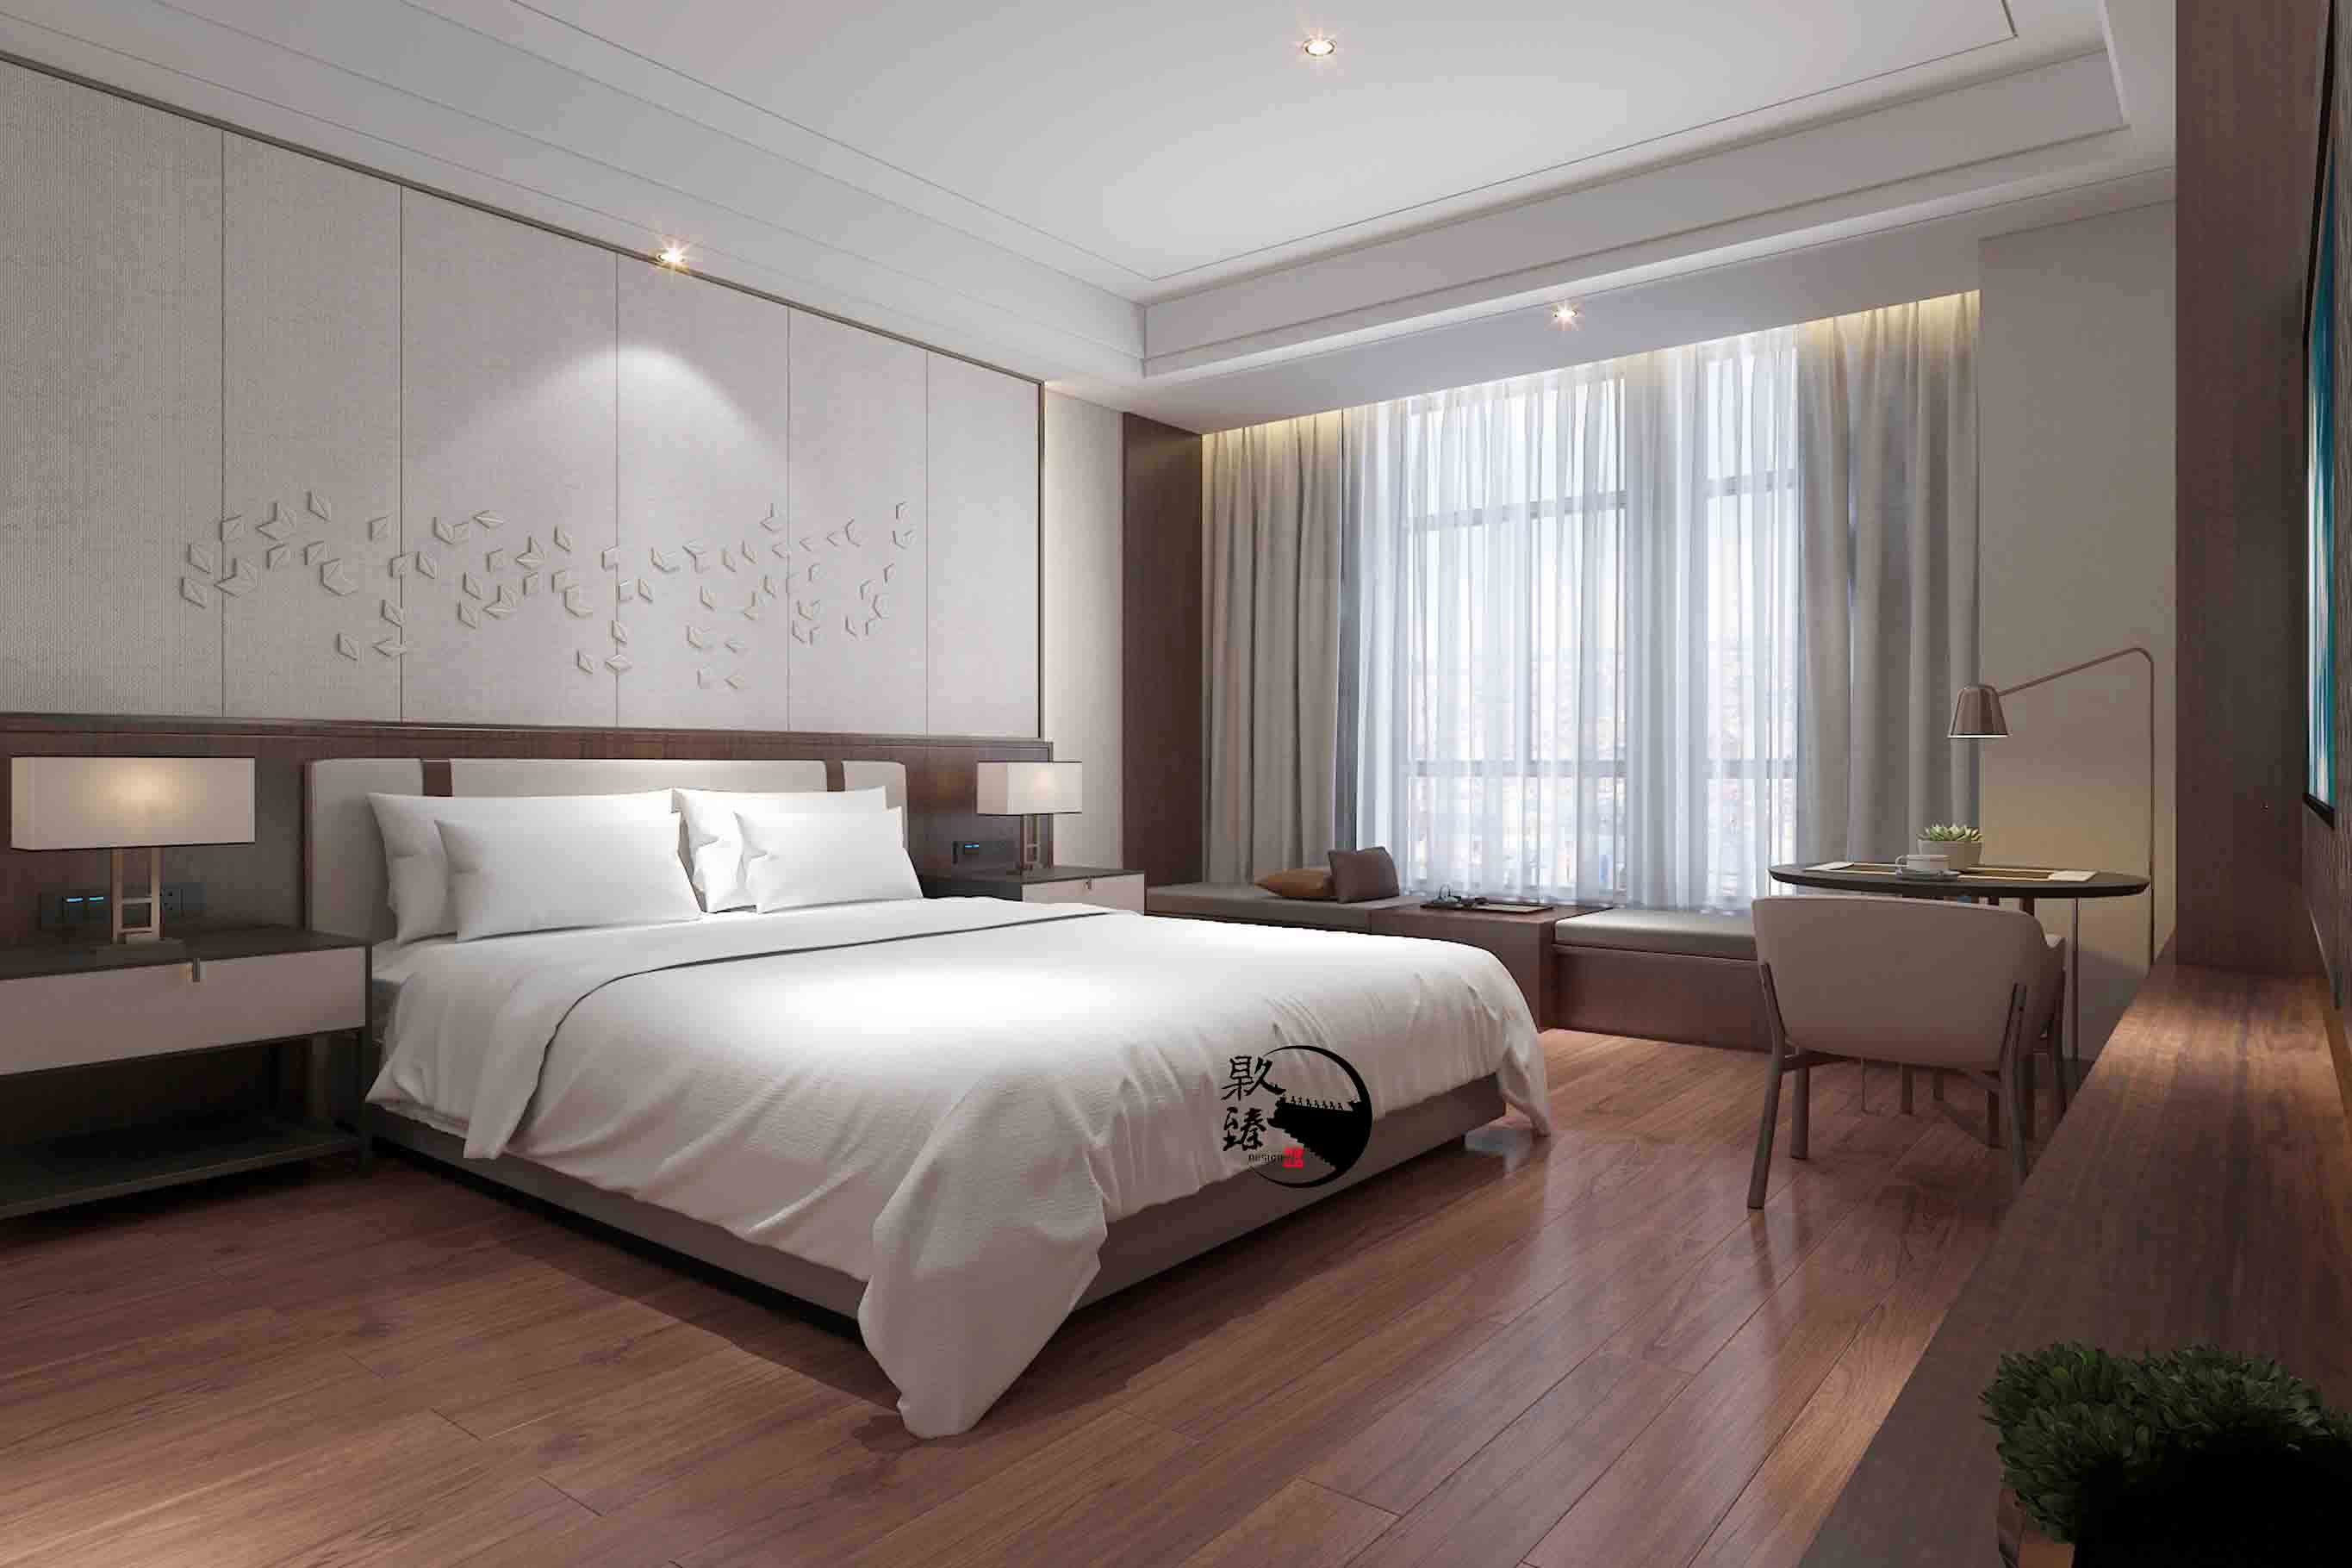 乌海米素酒店设计|满足客户对舒适和安静的需求